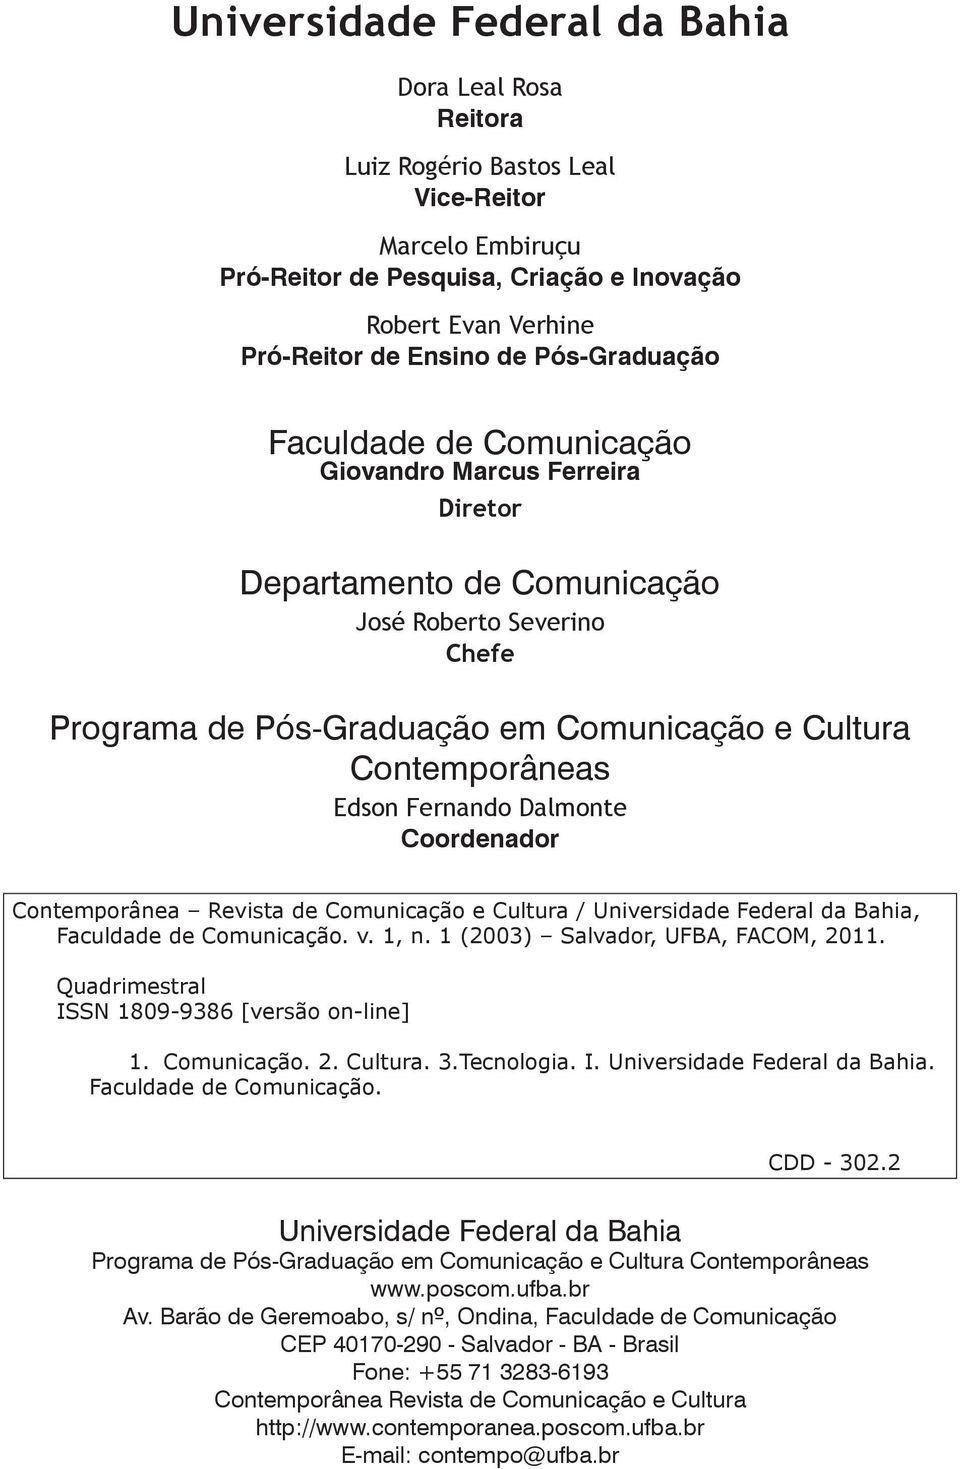 Edson Fernando Dalmonte Coordenador Contemporânea Revista de Comunicação e Cultura / Universidade Federal da Bahia, Faculdade de Comunicação. v. 1, n. 1 (2003) Salvador, UFBA, FACOM, 2011.